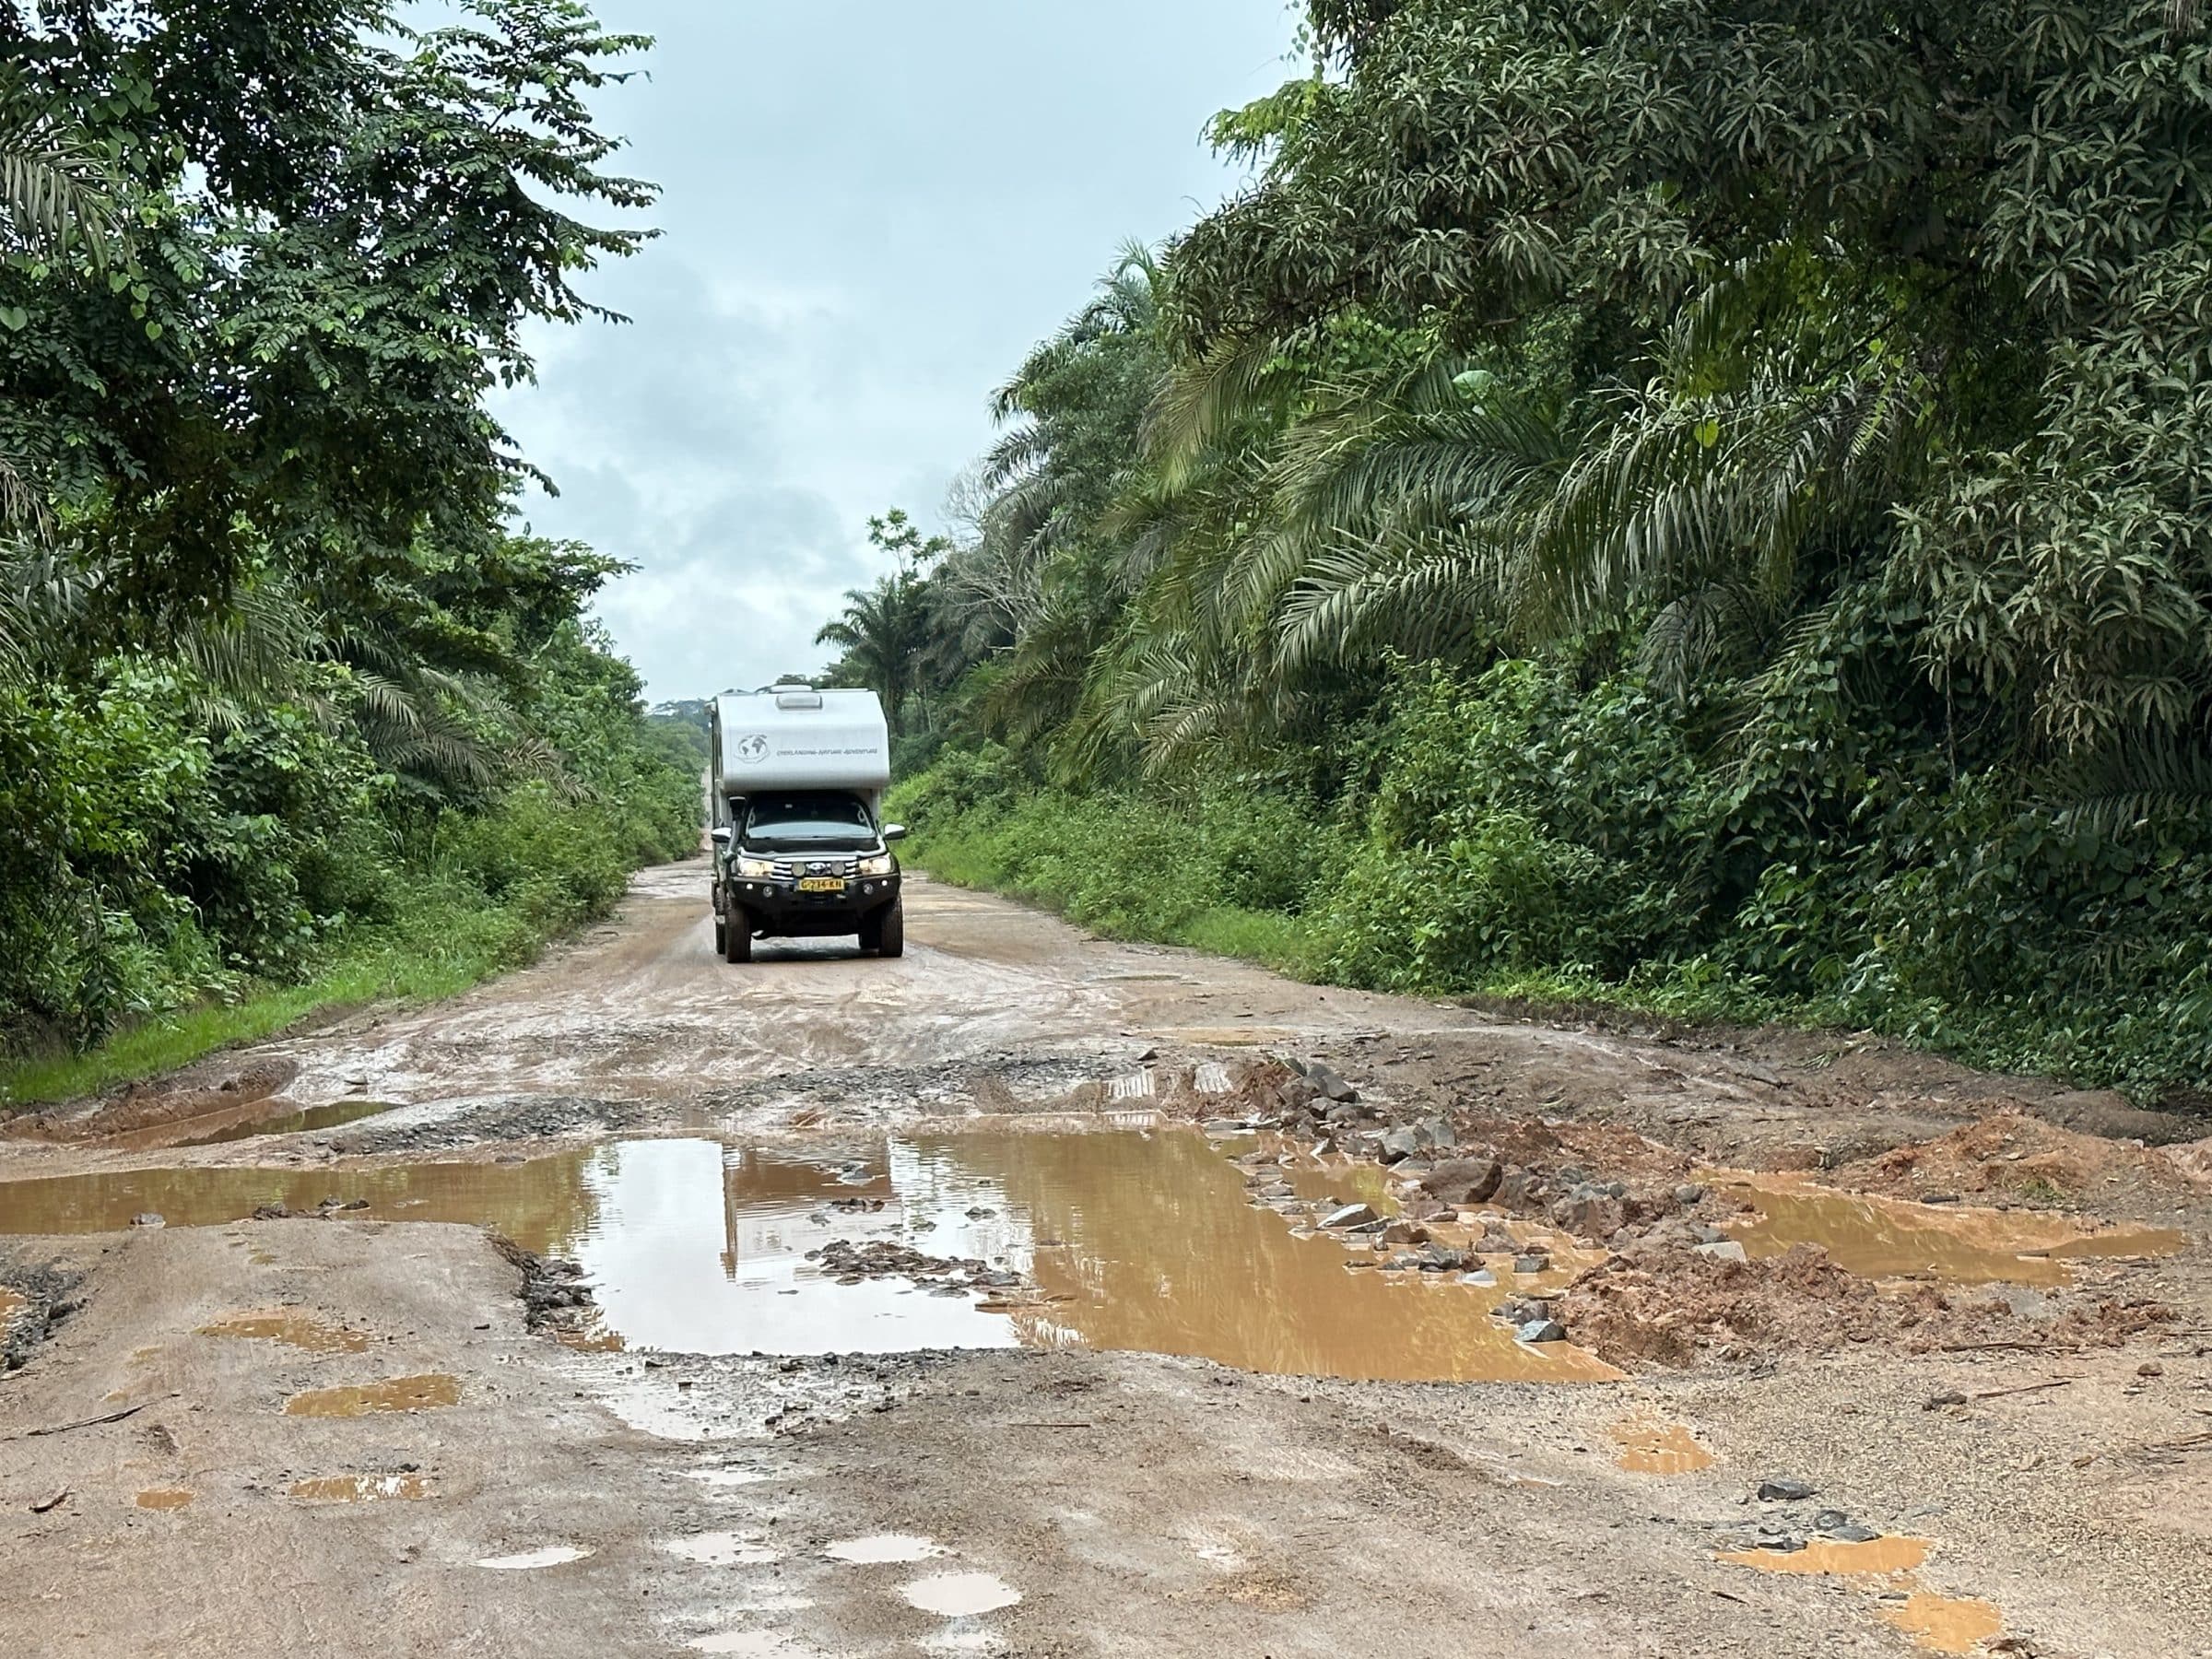 Muddy roads in Nigeria